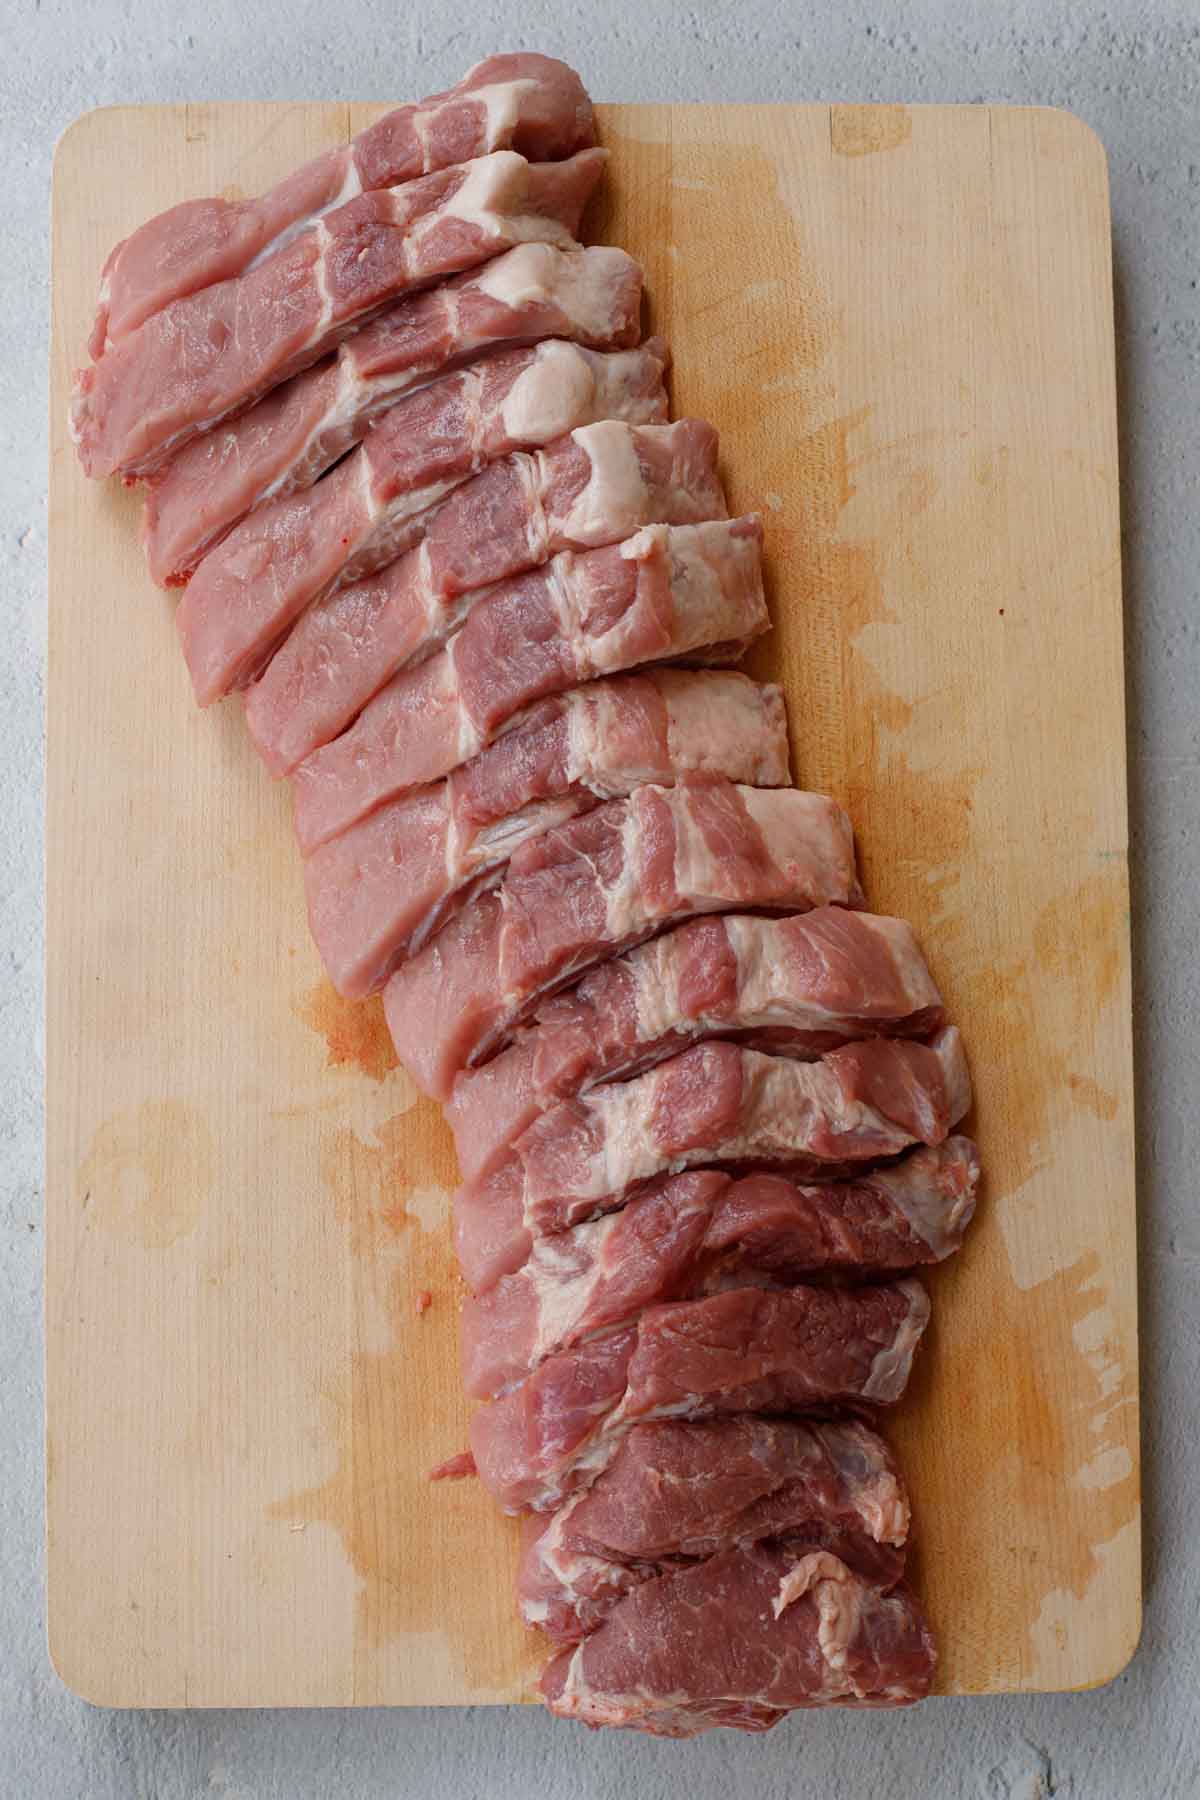 The pork ribs divided into individual ribs. 